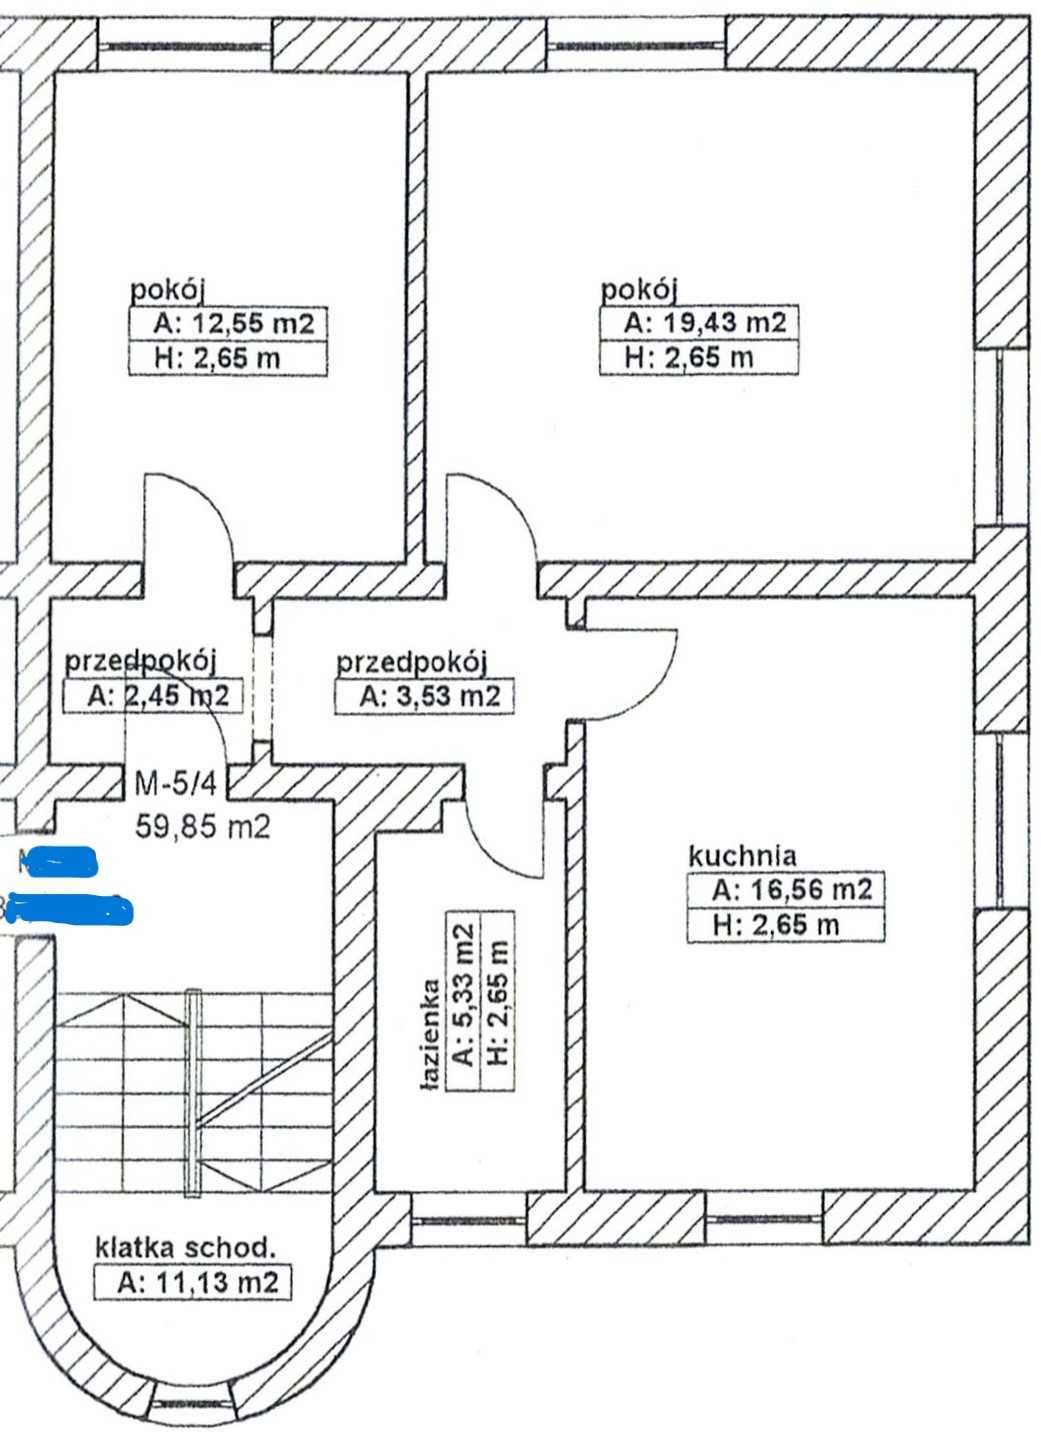 Mieszkanie 59,85 m2, 2 pokoje, duża kuchnia